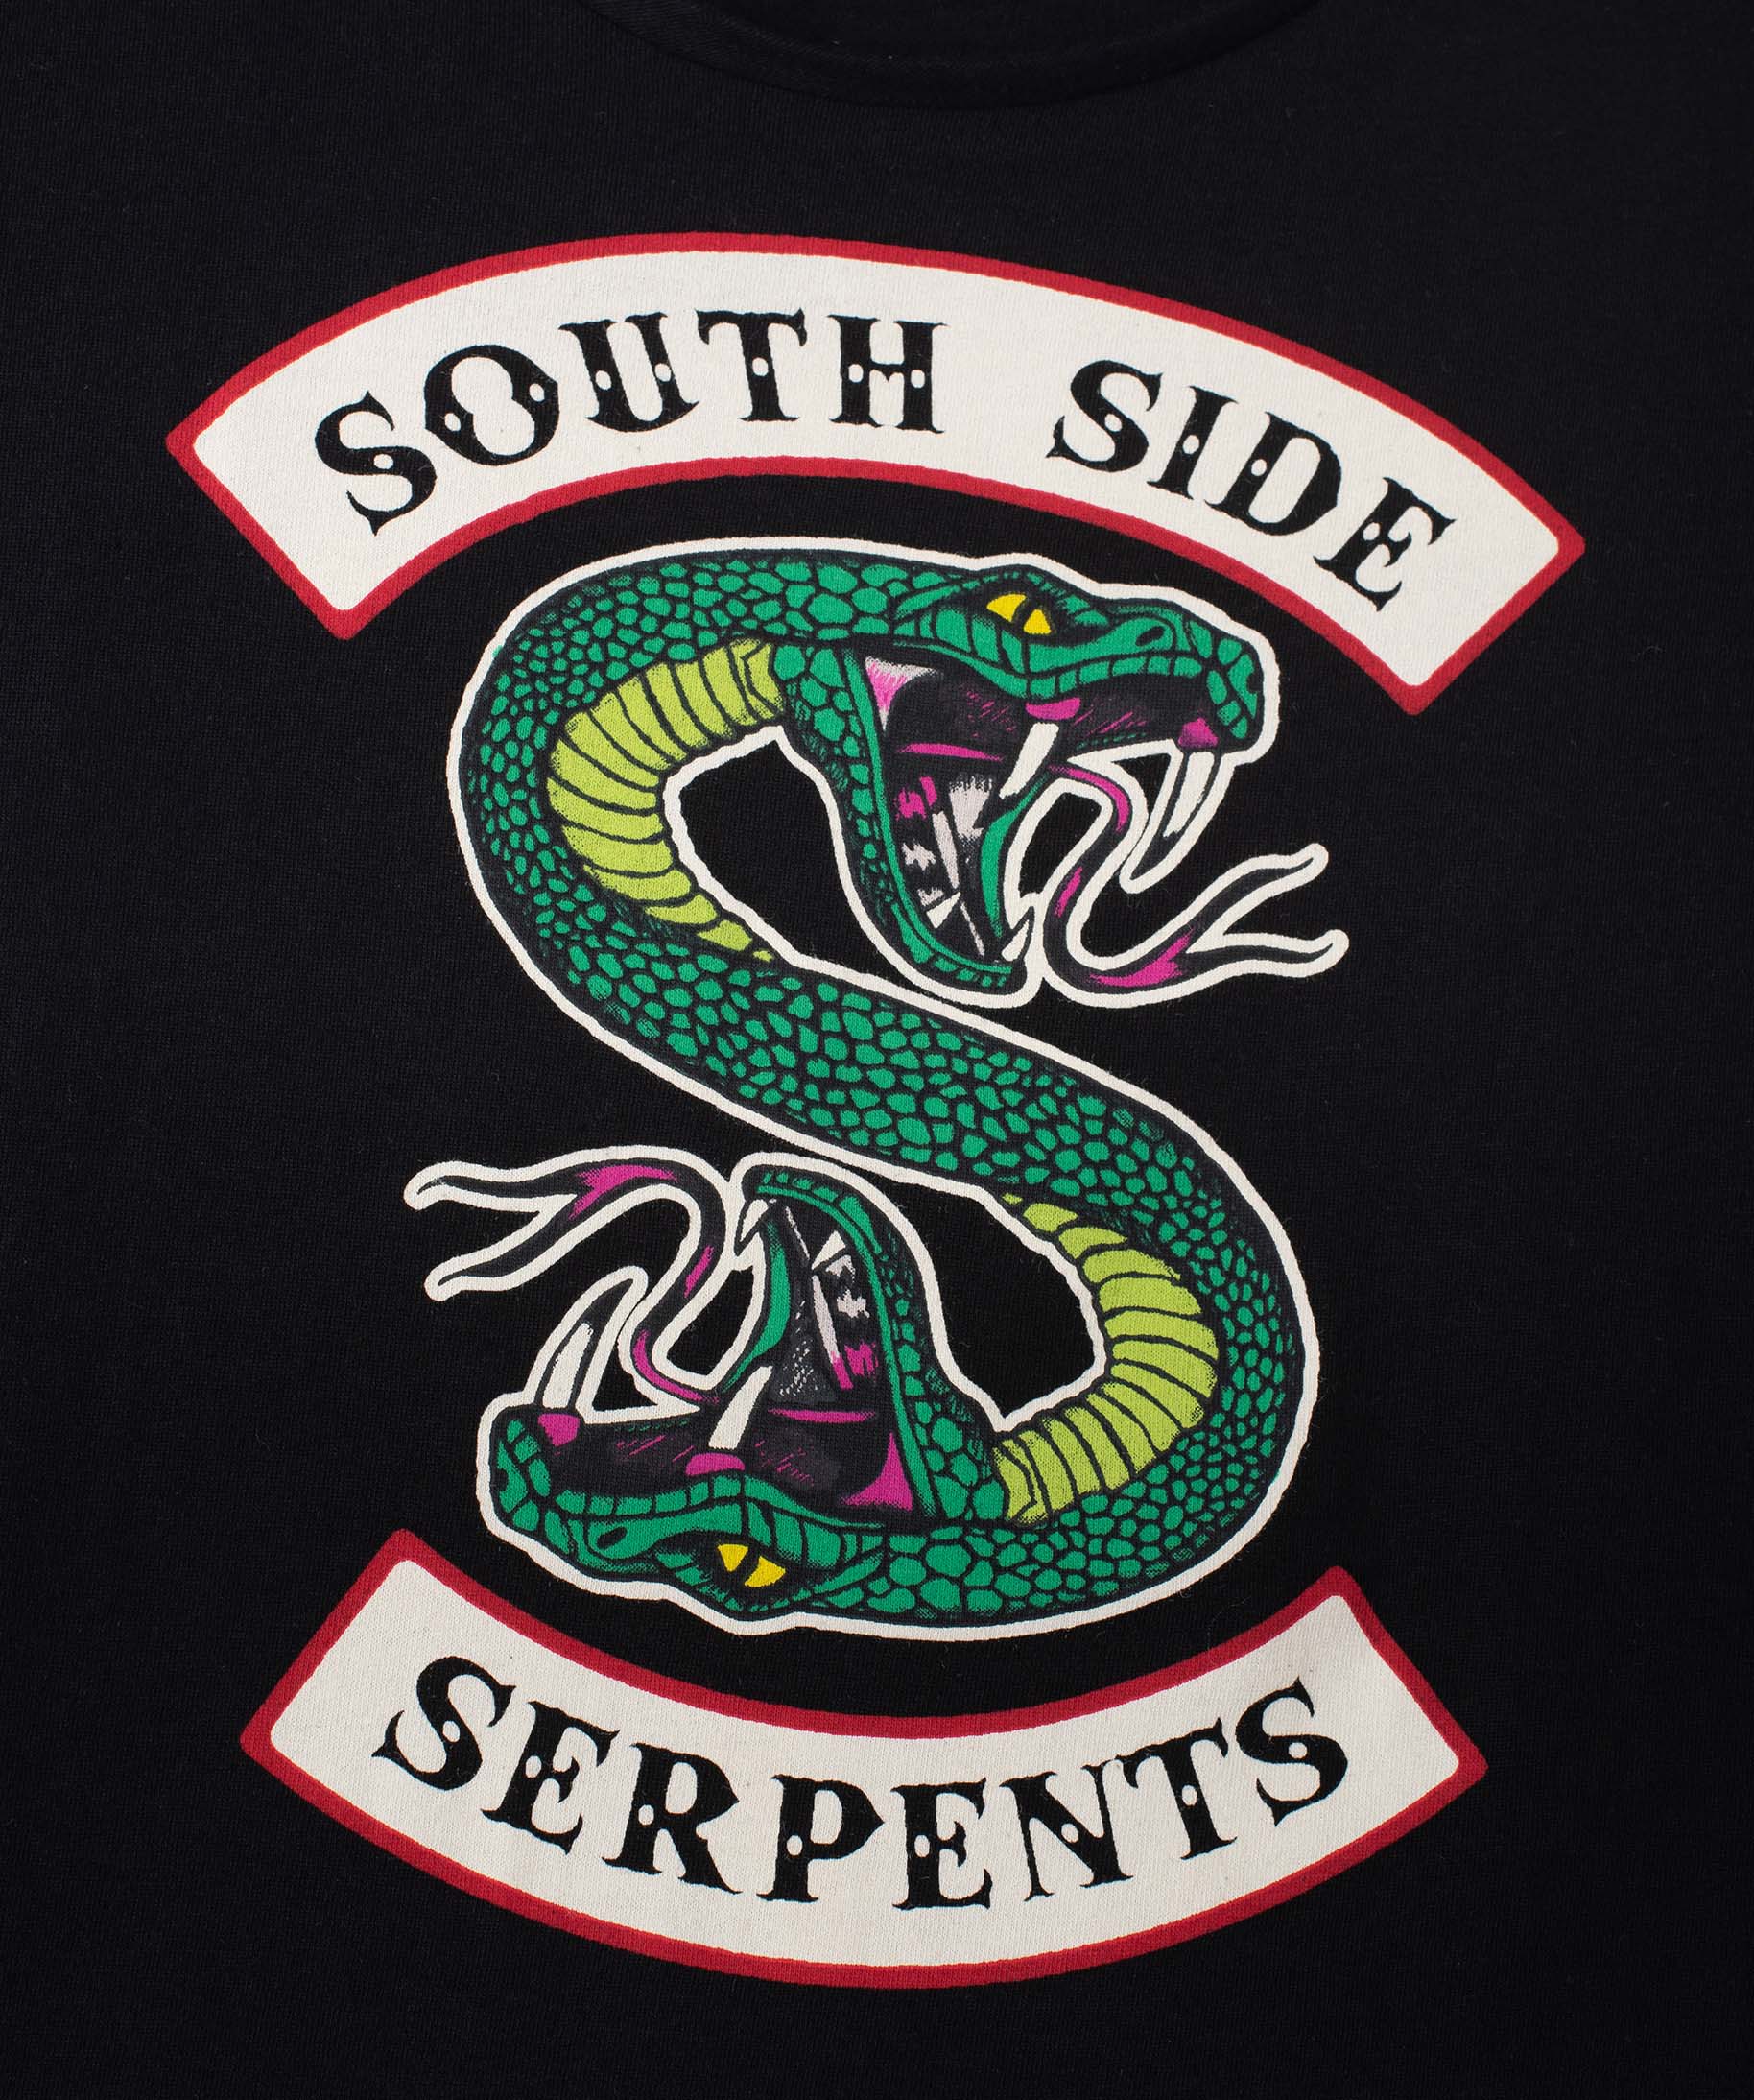 Riverdale Ensemble De Pyjamas Fille Southside Serpent